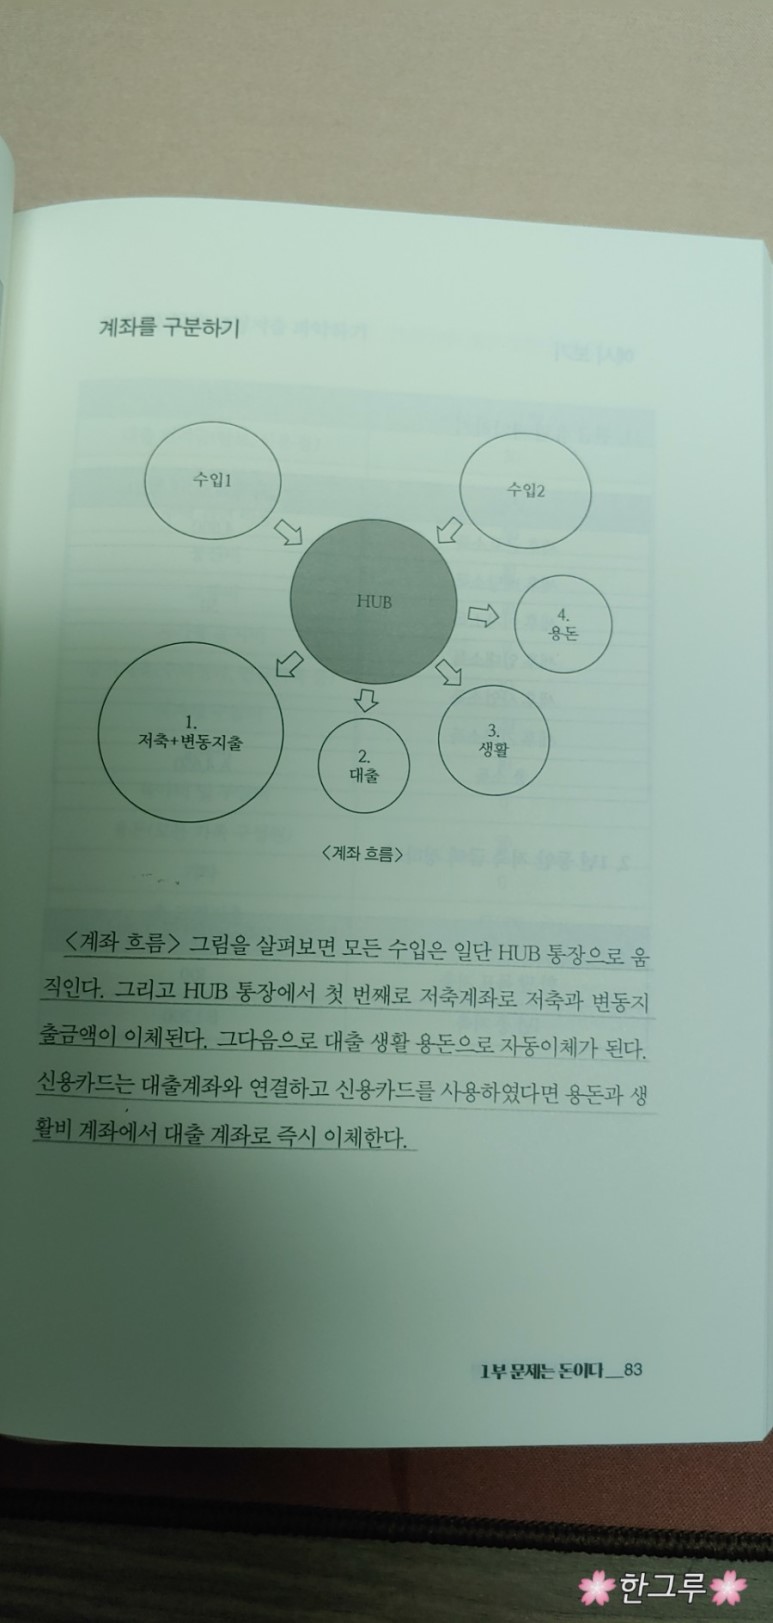 송병권. 부의 시작 가난의 끝. p 83.jpg